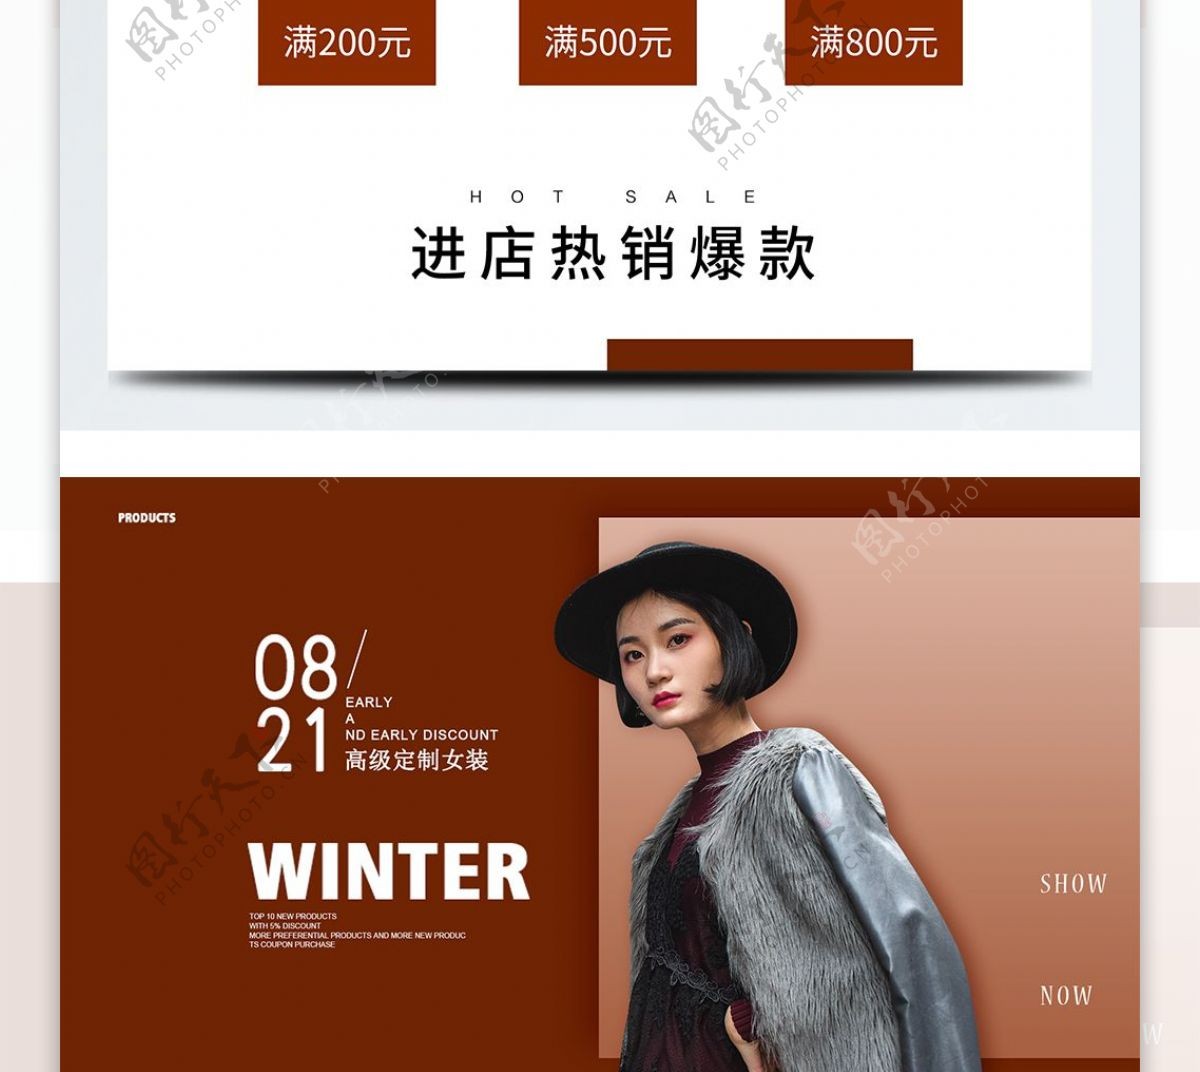 冬季时尚高级定制女装冬装首页banner